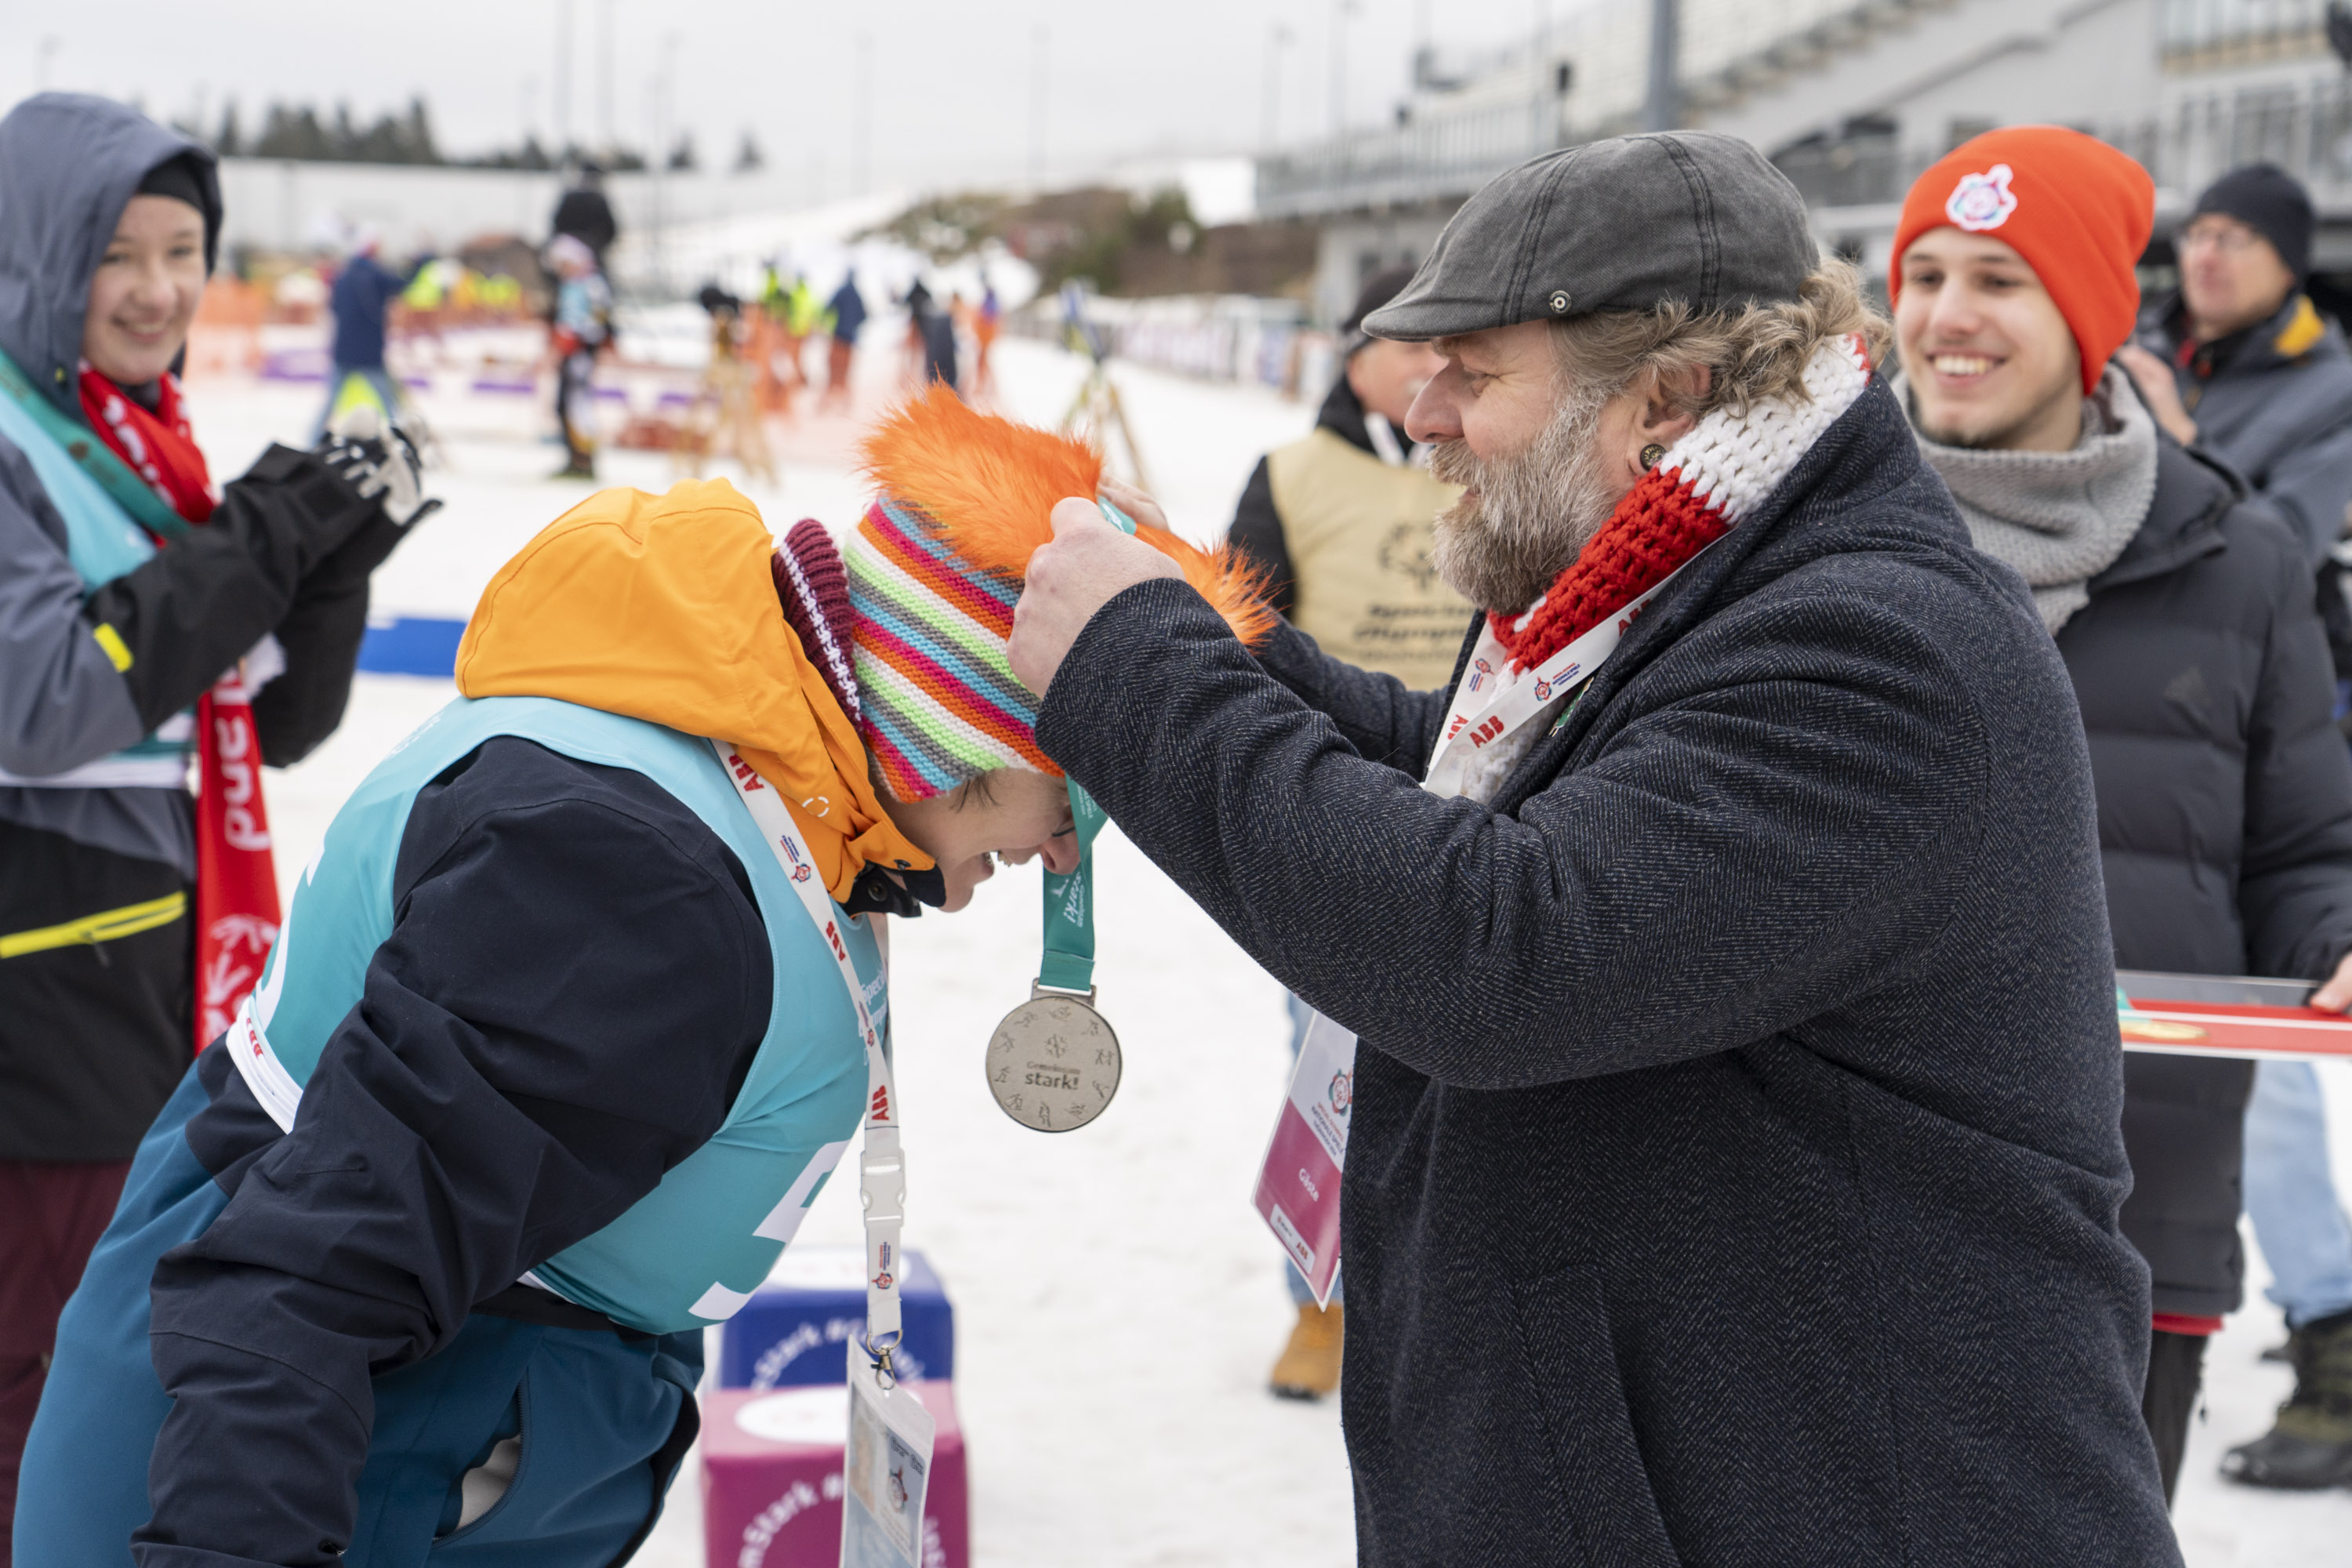 Ein Mann mit Mütze und Winterjacke hängt einer Athletin mit Mütze und Winterjacke eine Silbermedaille um. Im Hintergrund weitere Personen.